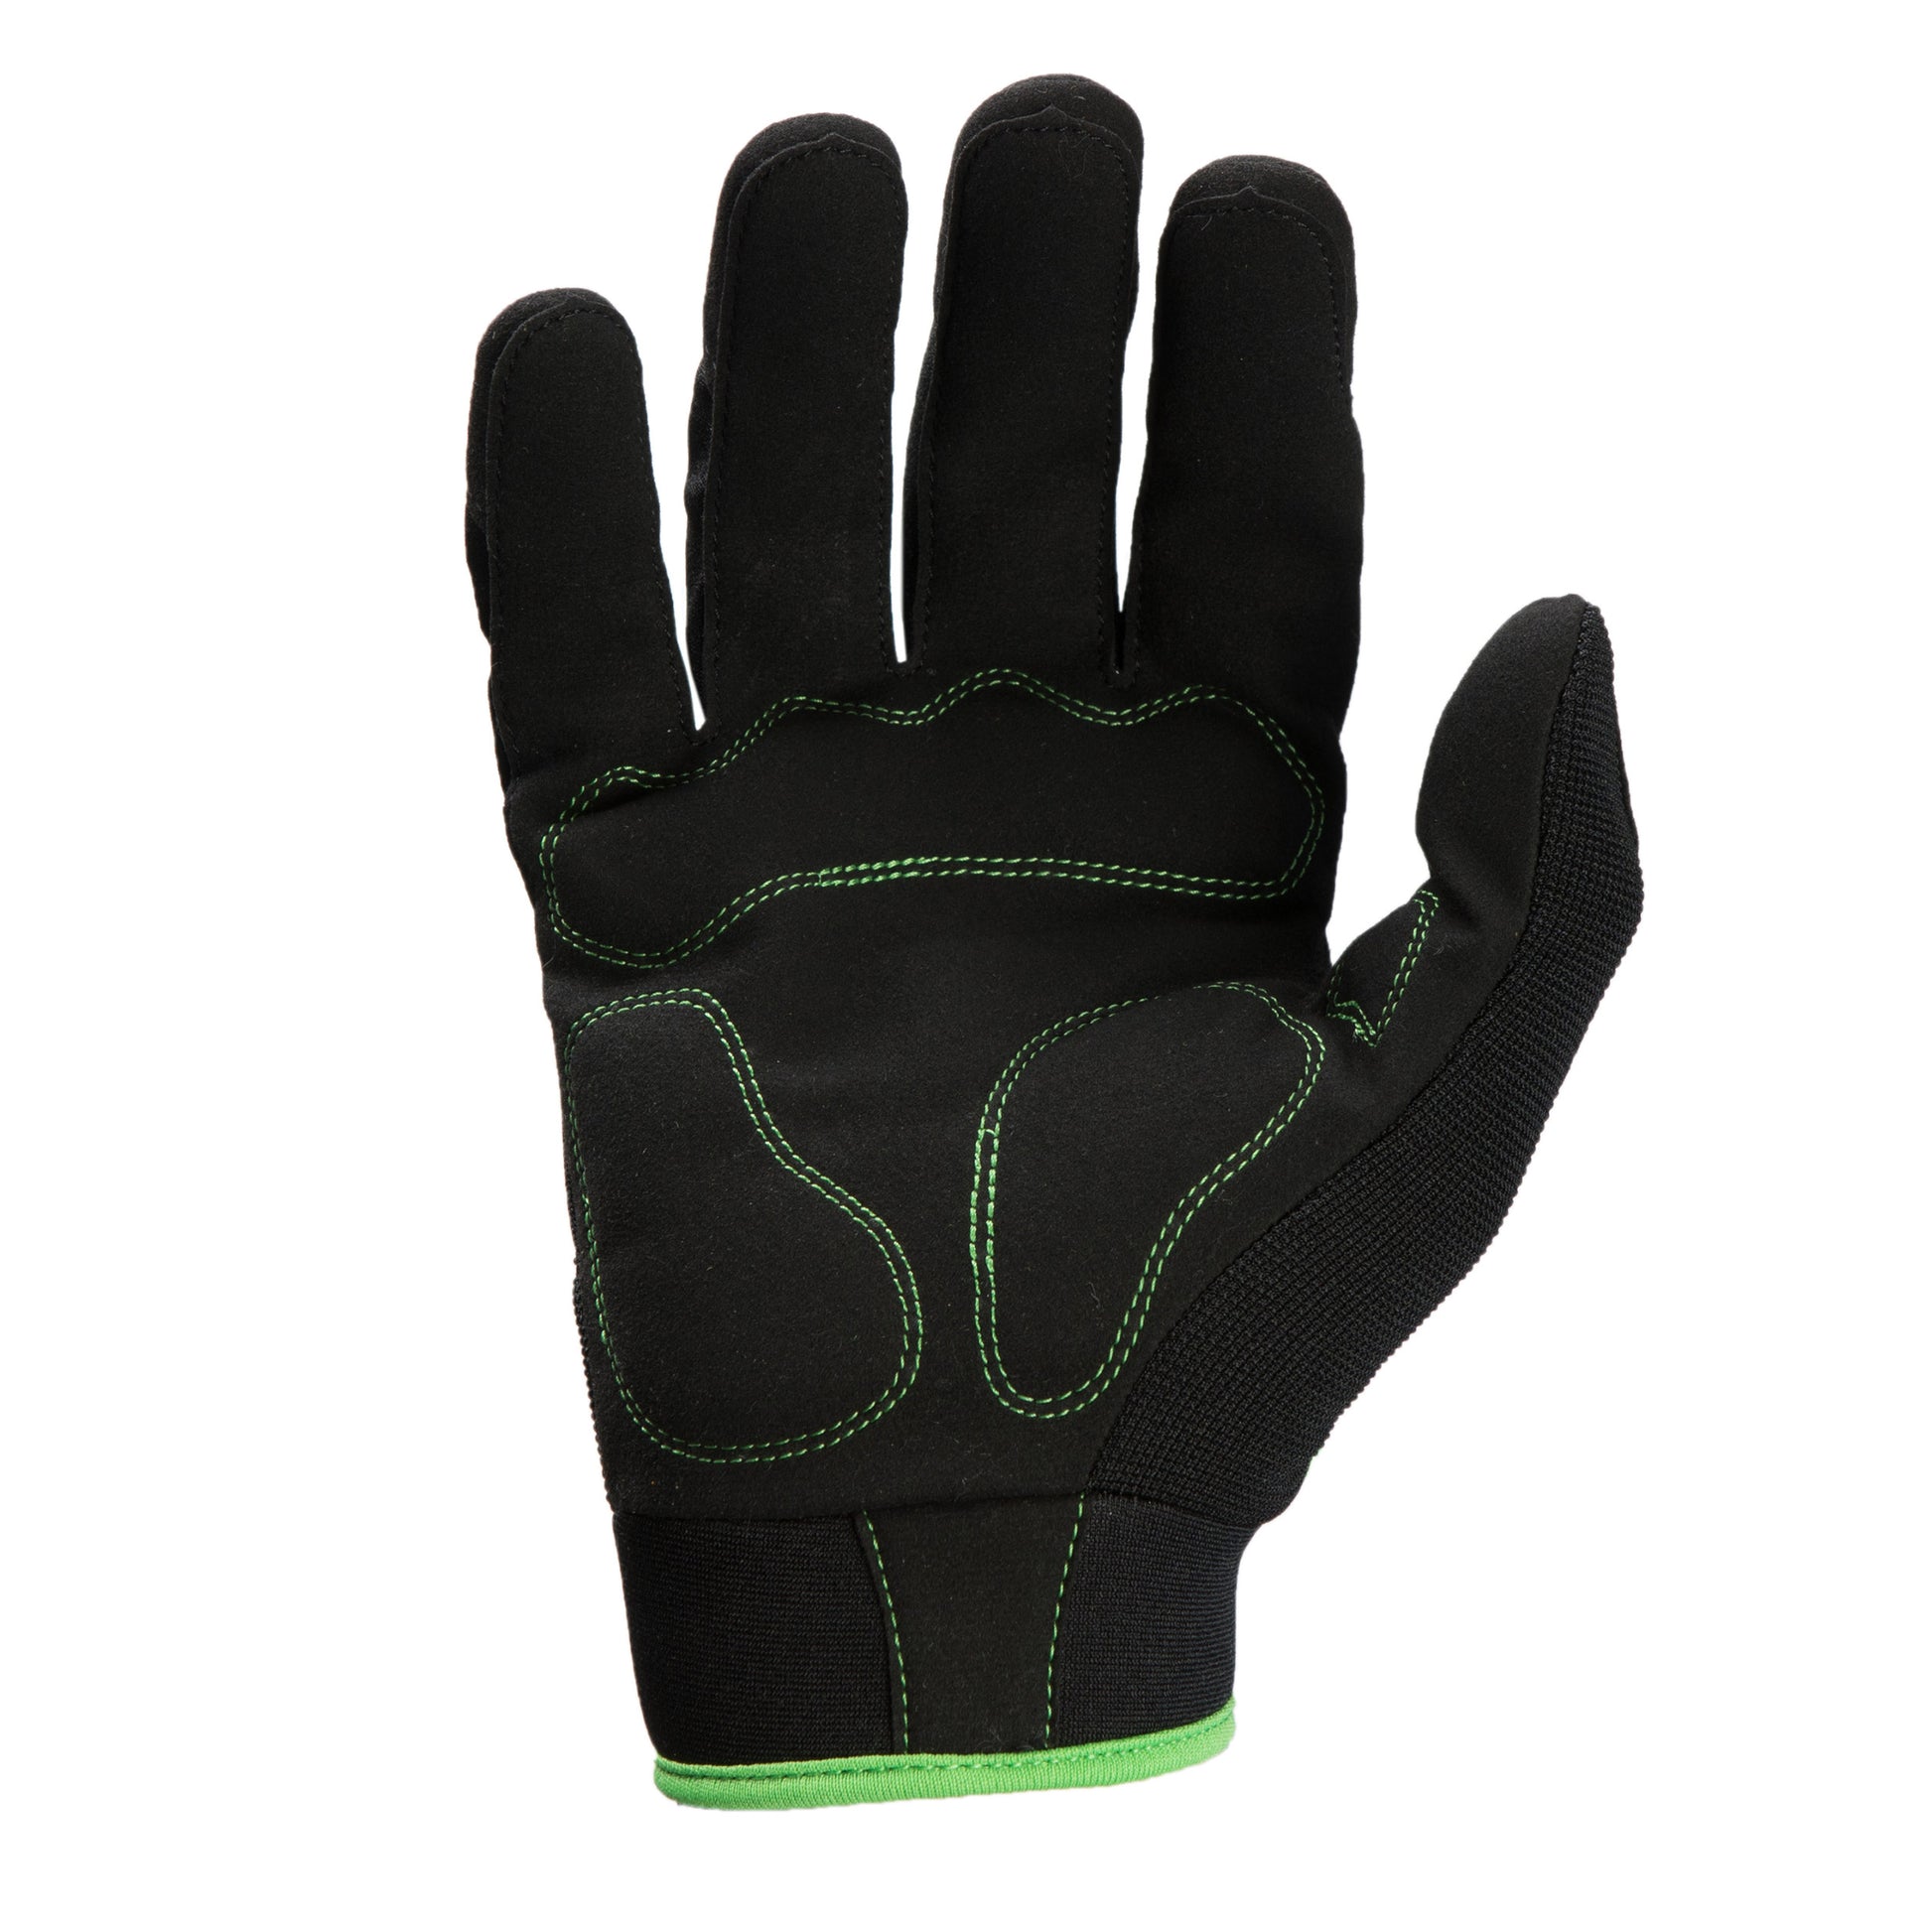 Brawny Gloves, Black, Large alt 1